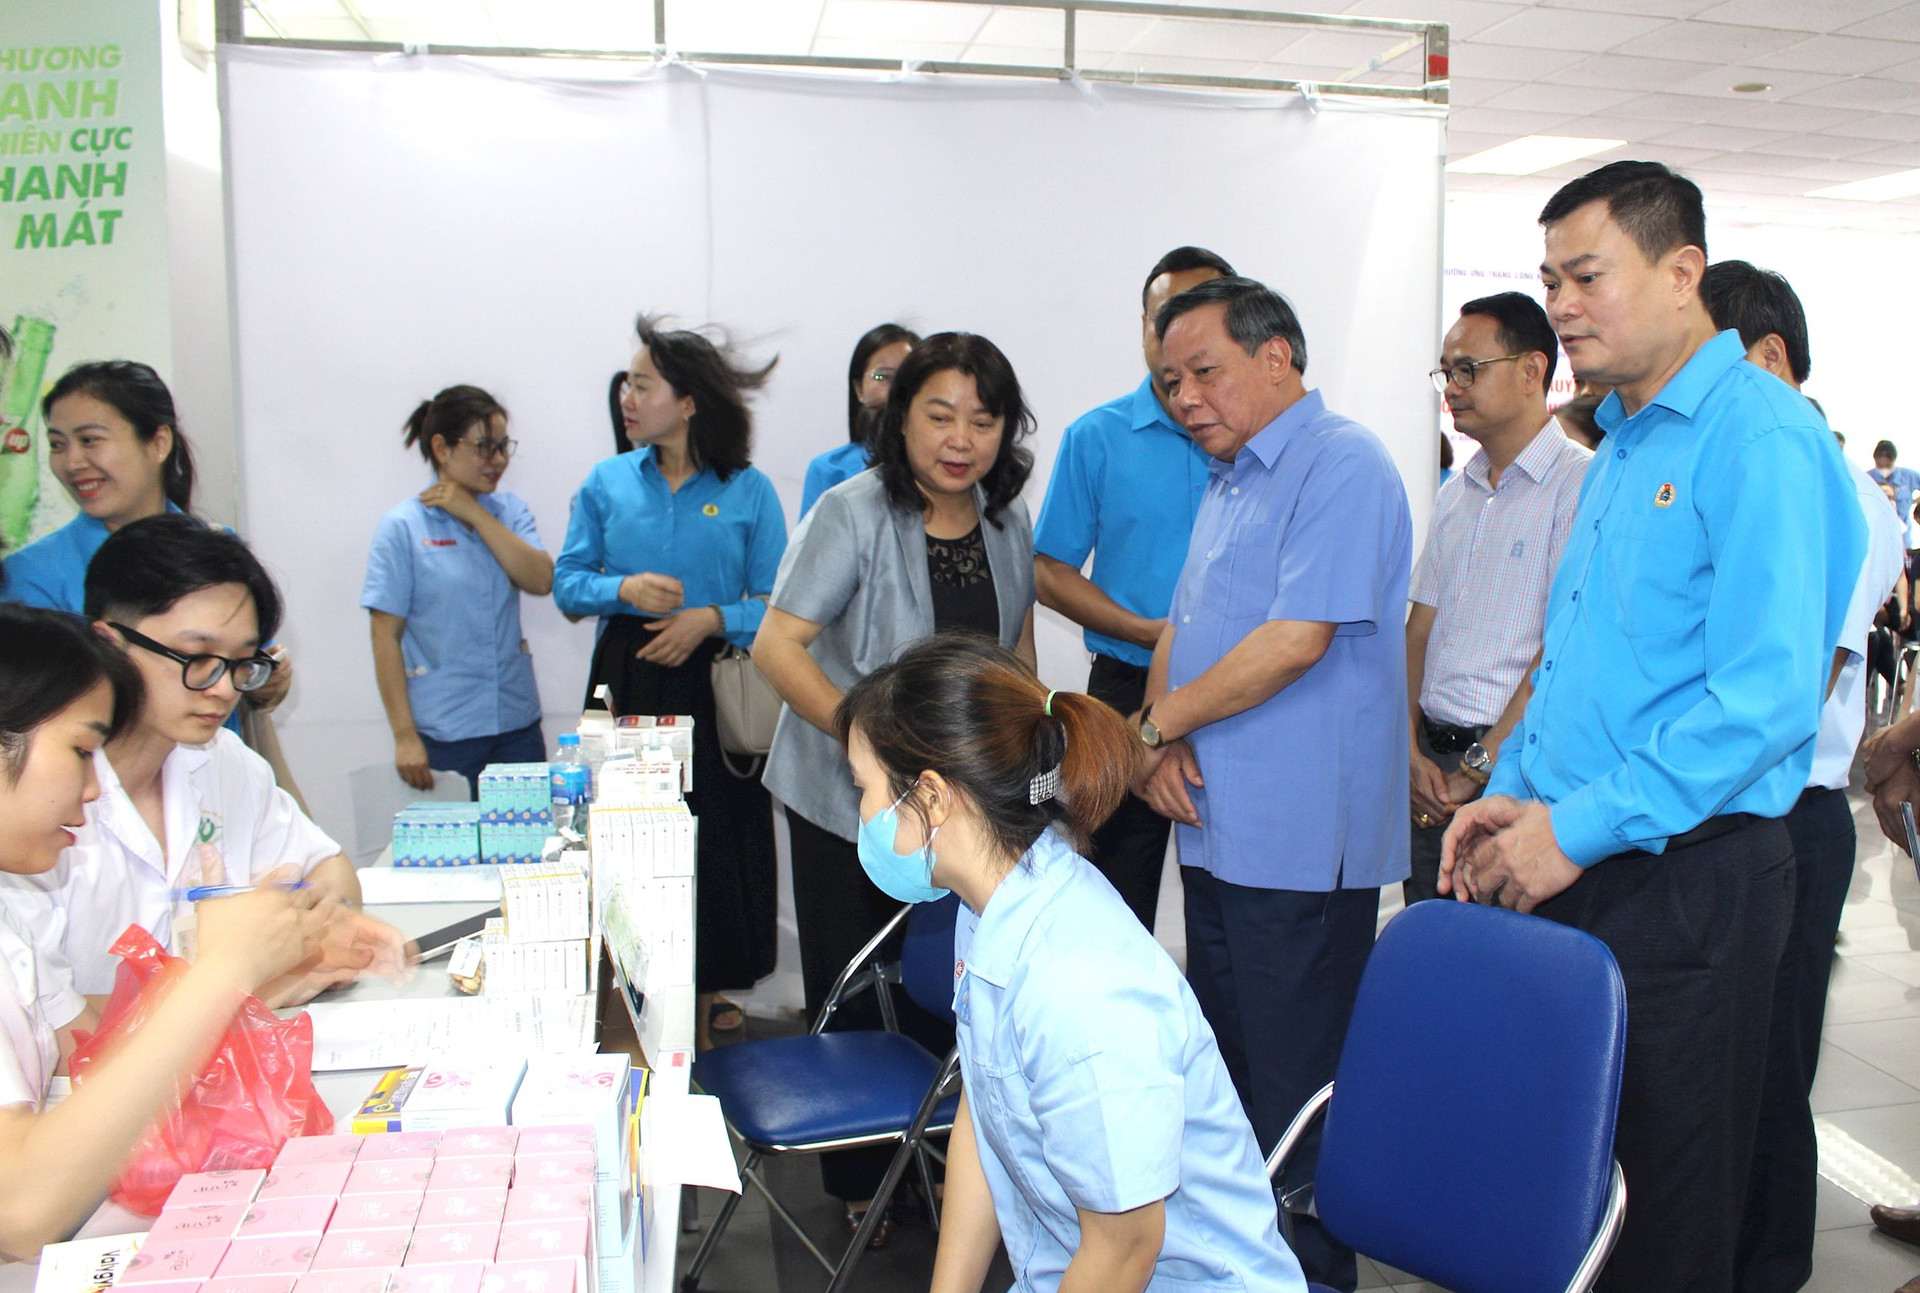 Tư vấn, khám sức khỏe miễn phí cho 600 công nhân, lao động tại Hà Nội